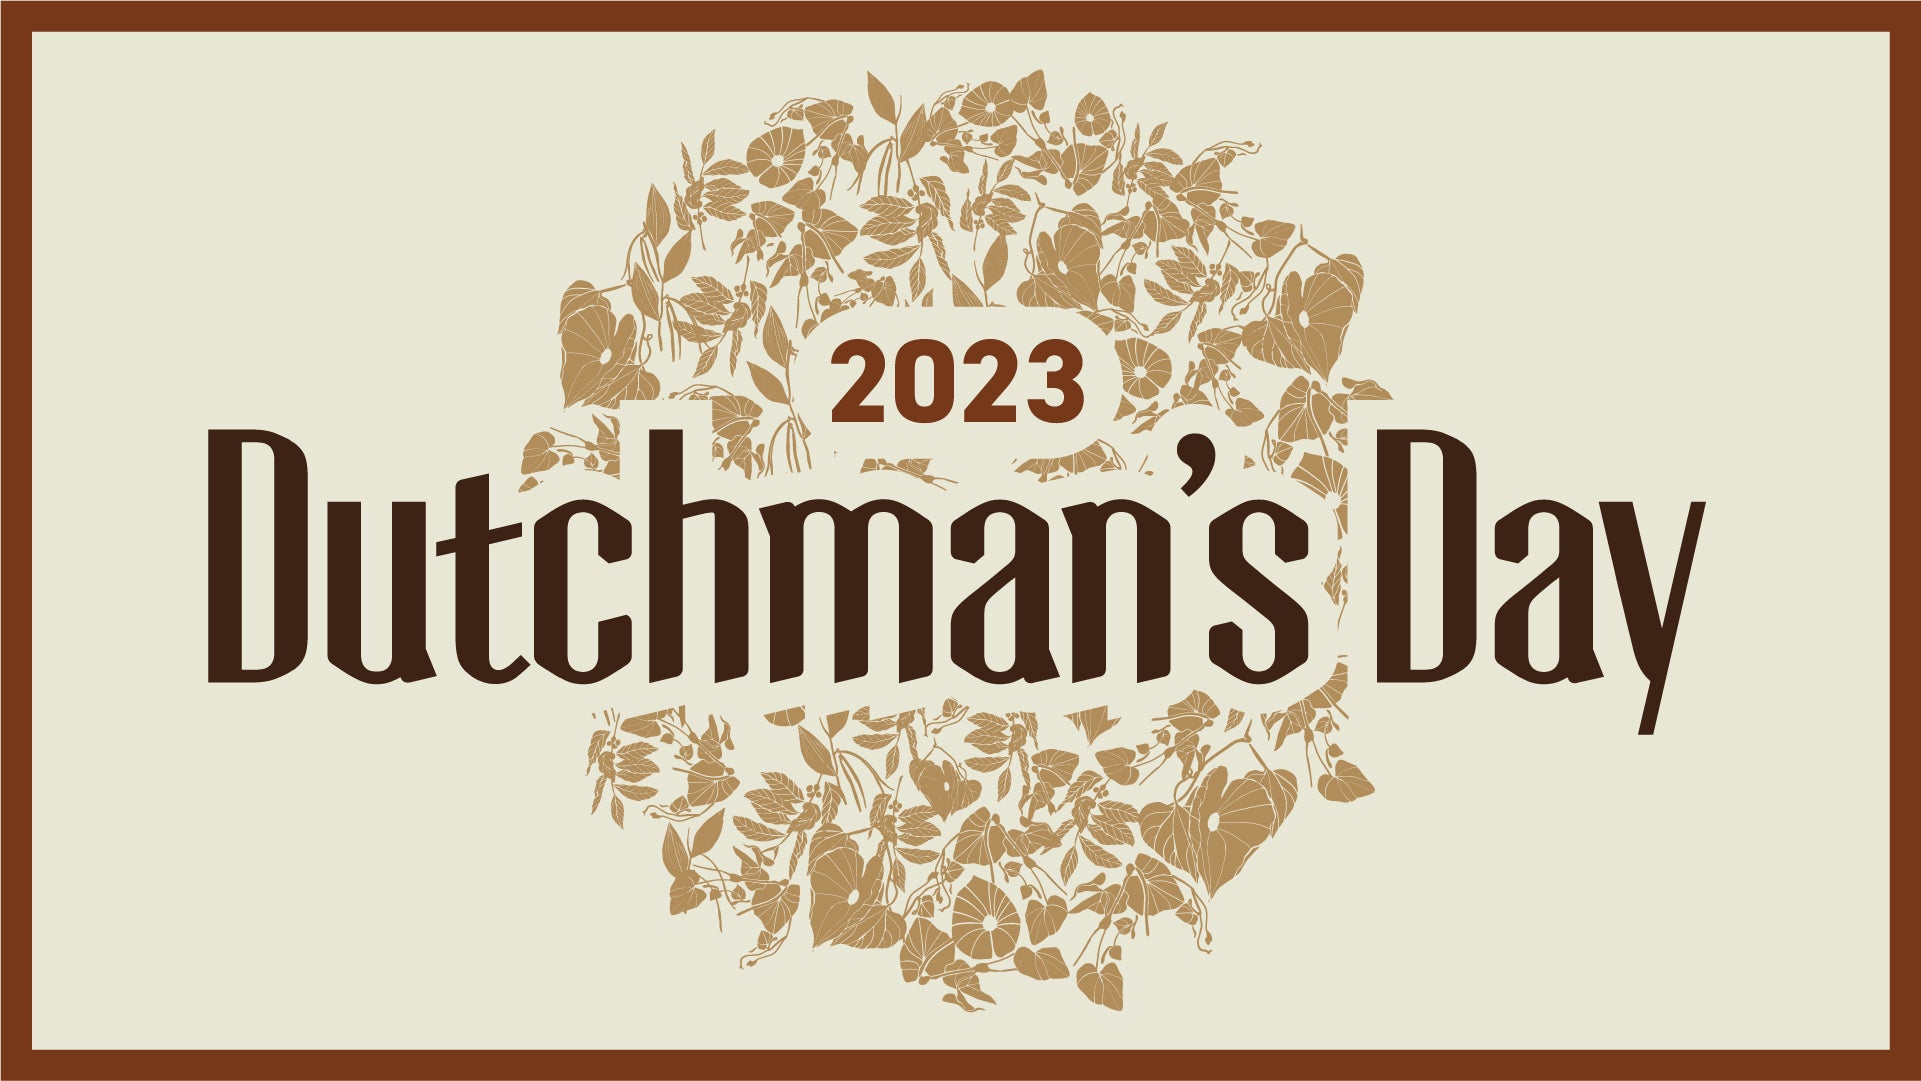 Dutchman's Day 2023